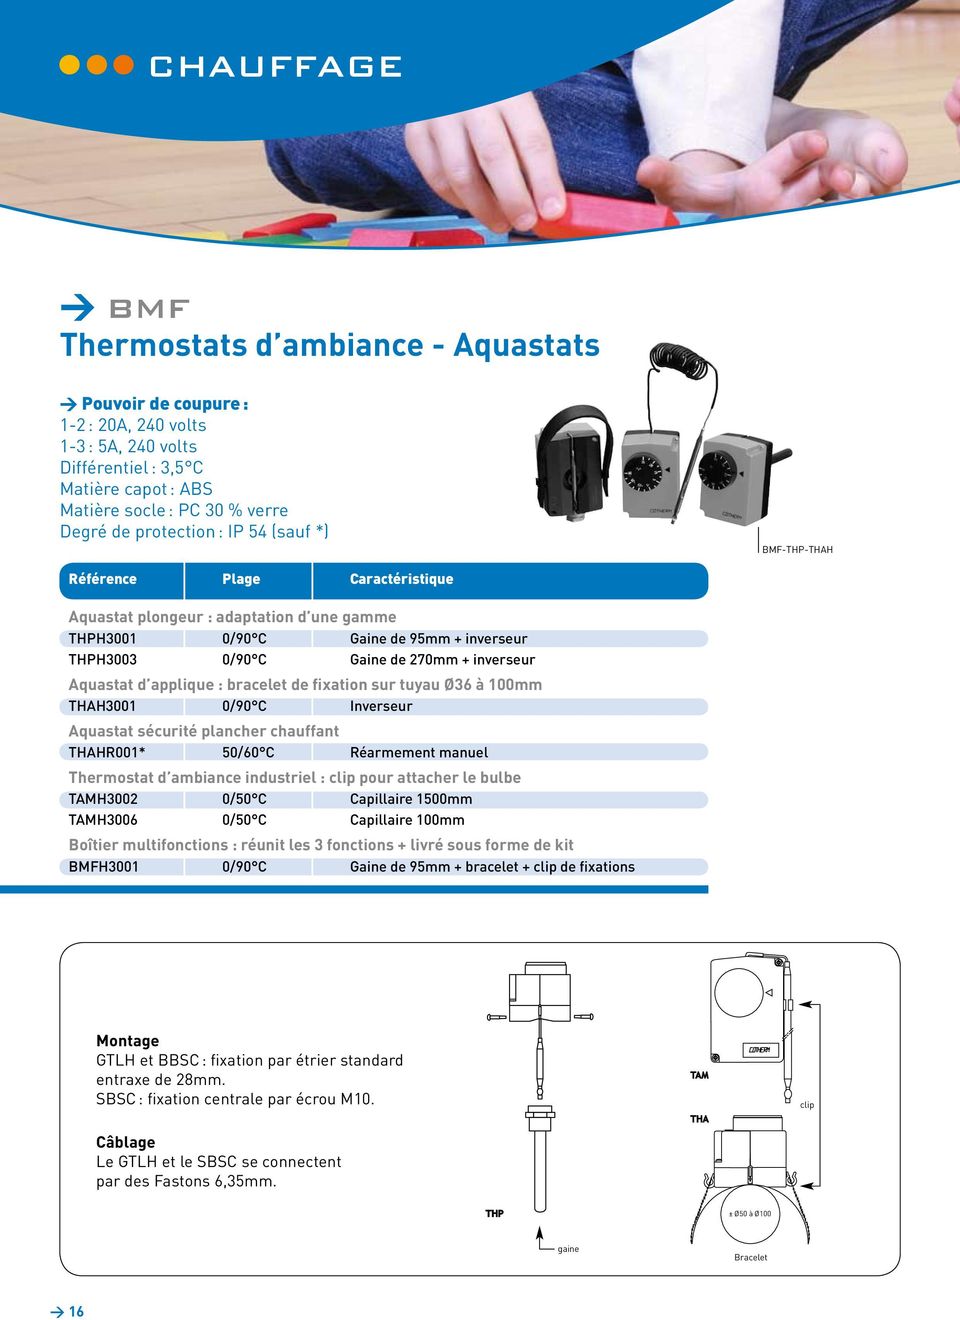 inverseur Aquastat d applique : bracelet de fixation sur tuyau Ø36 à 100mm THAH3001 0/90 C Inverseur Aquastat sécurité plancher chauffant THAHR001* 50/60 C Réarmement manuel Thermostat d ambiance